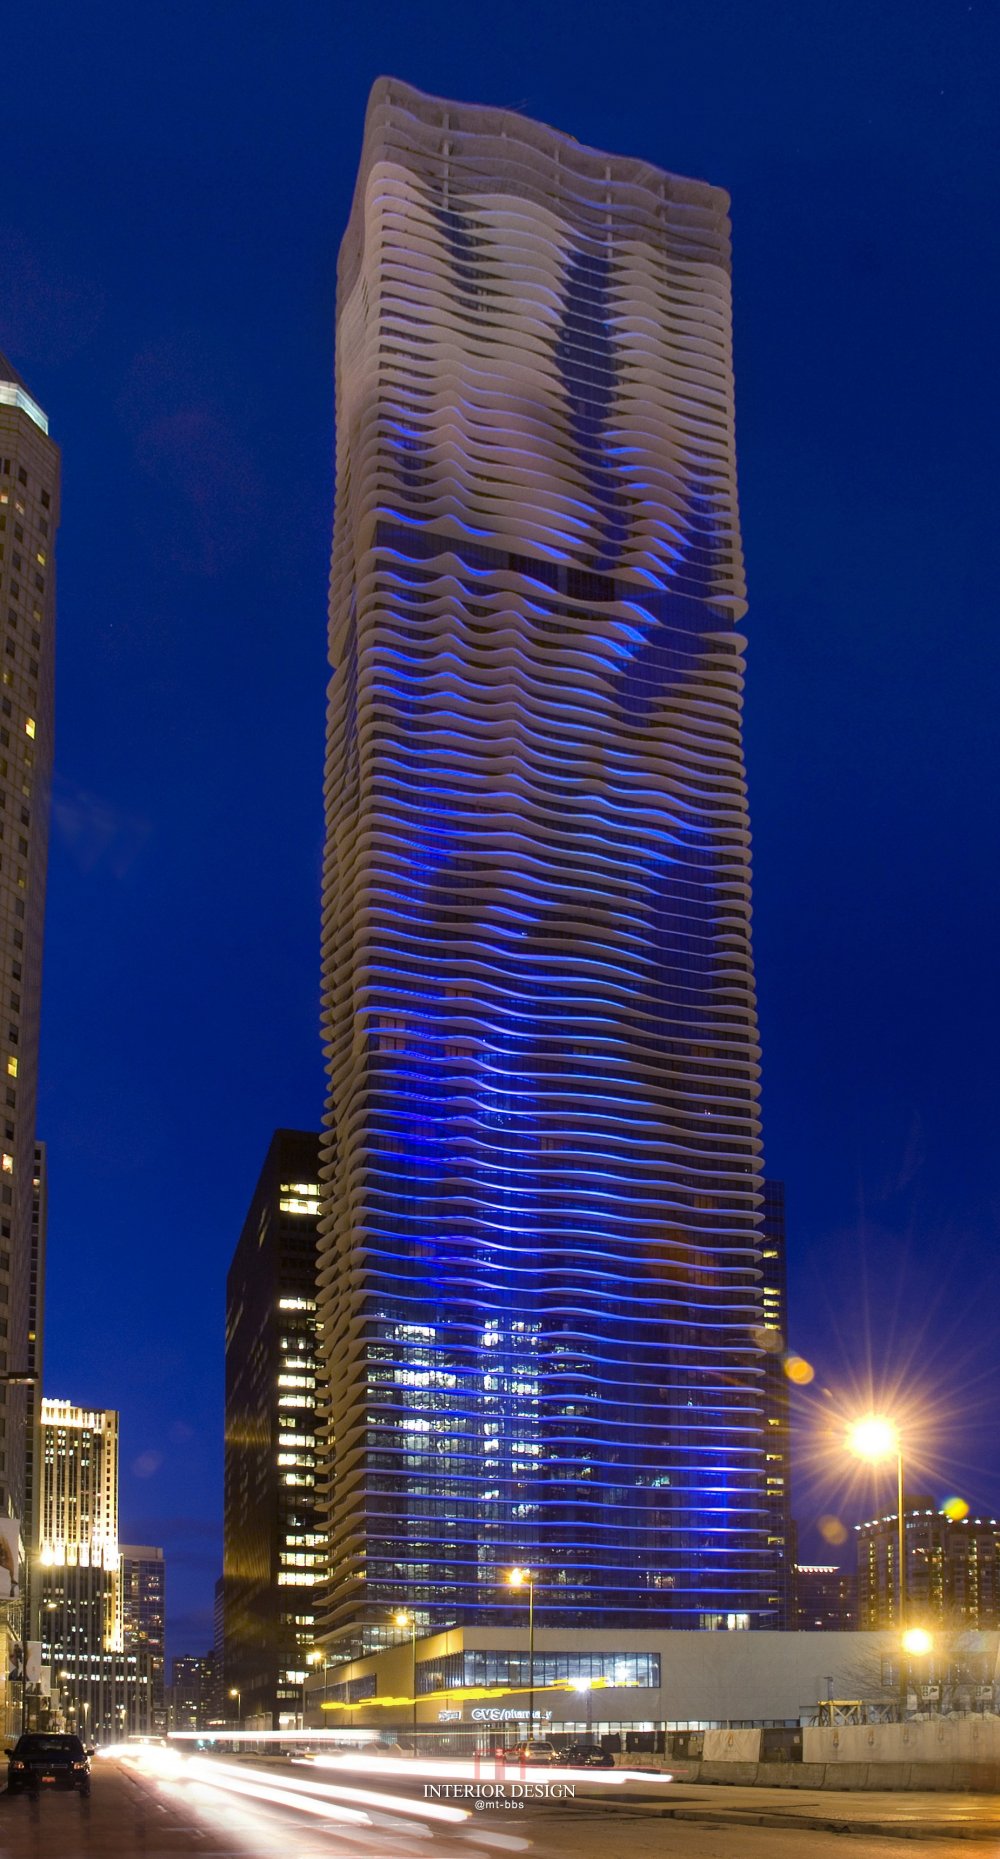 芝加哥雷迪森布鲁酒店 Radisson Blu Aqua Hotel Chicago_39359812-H1-Blue_Aqua_nighttime.jpg